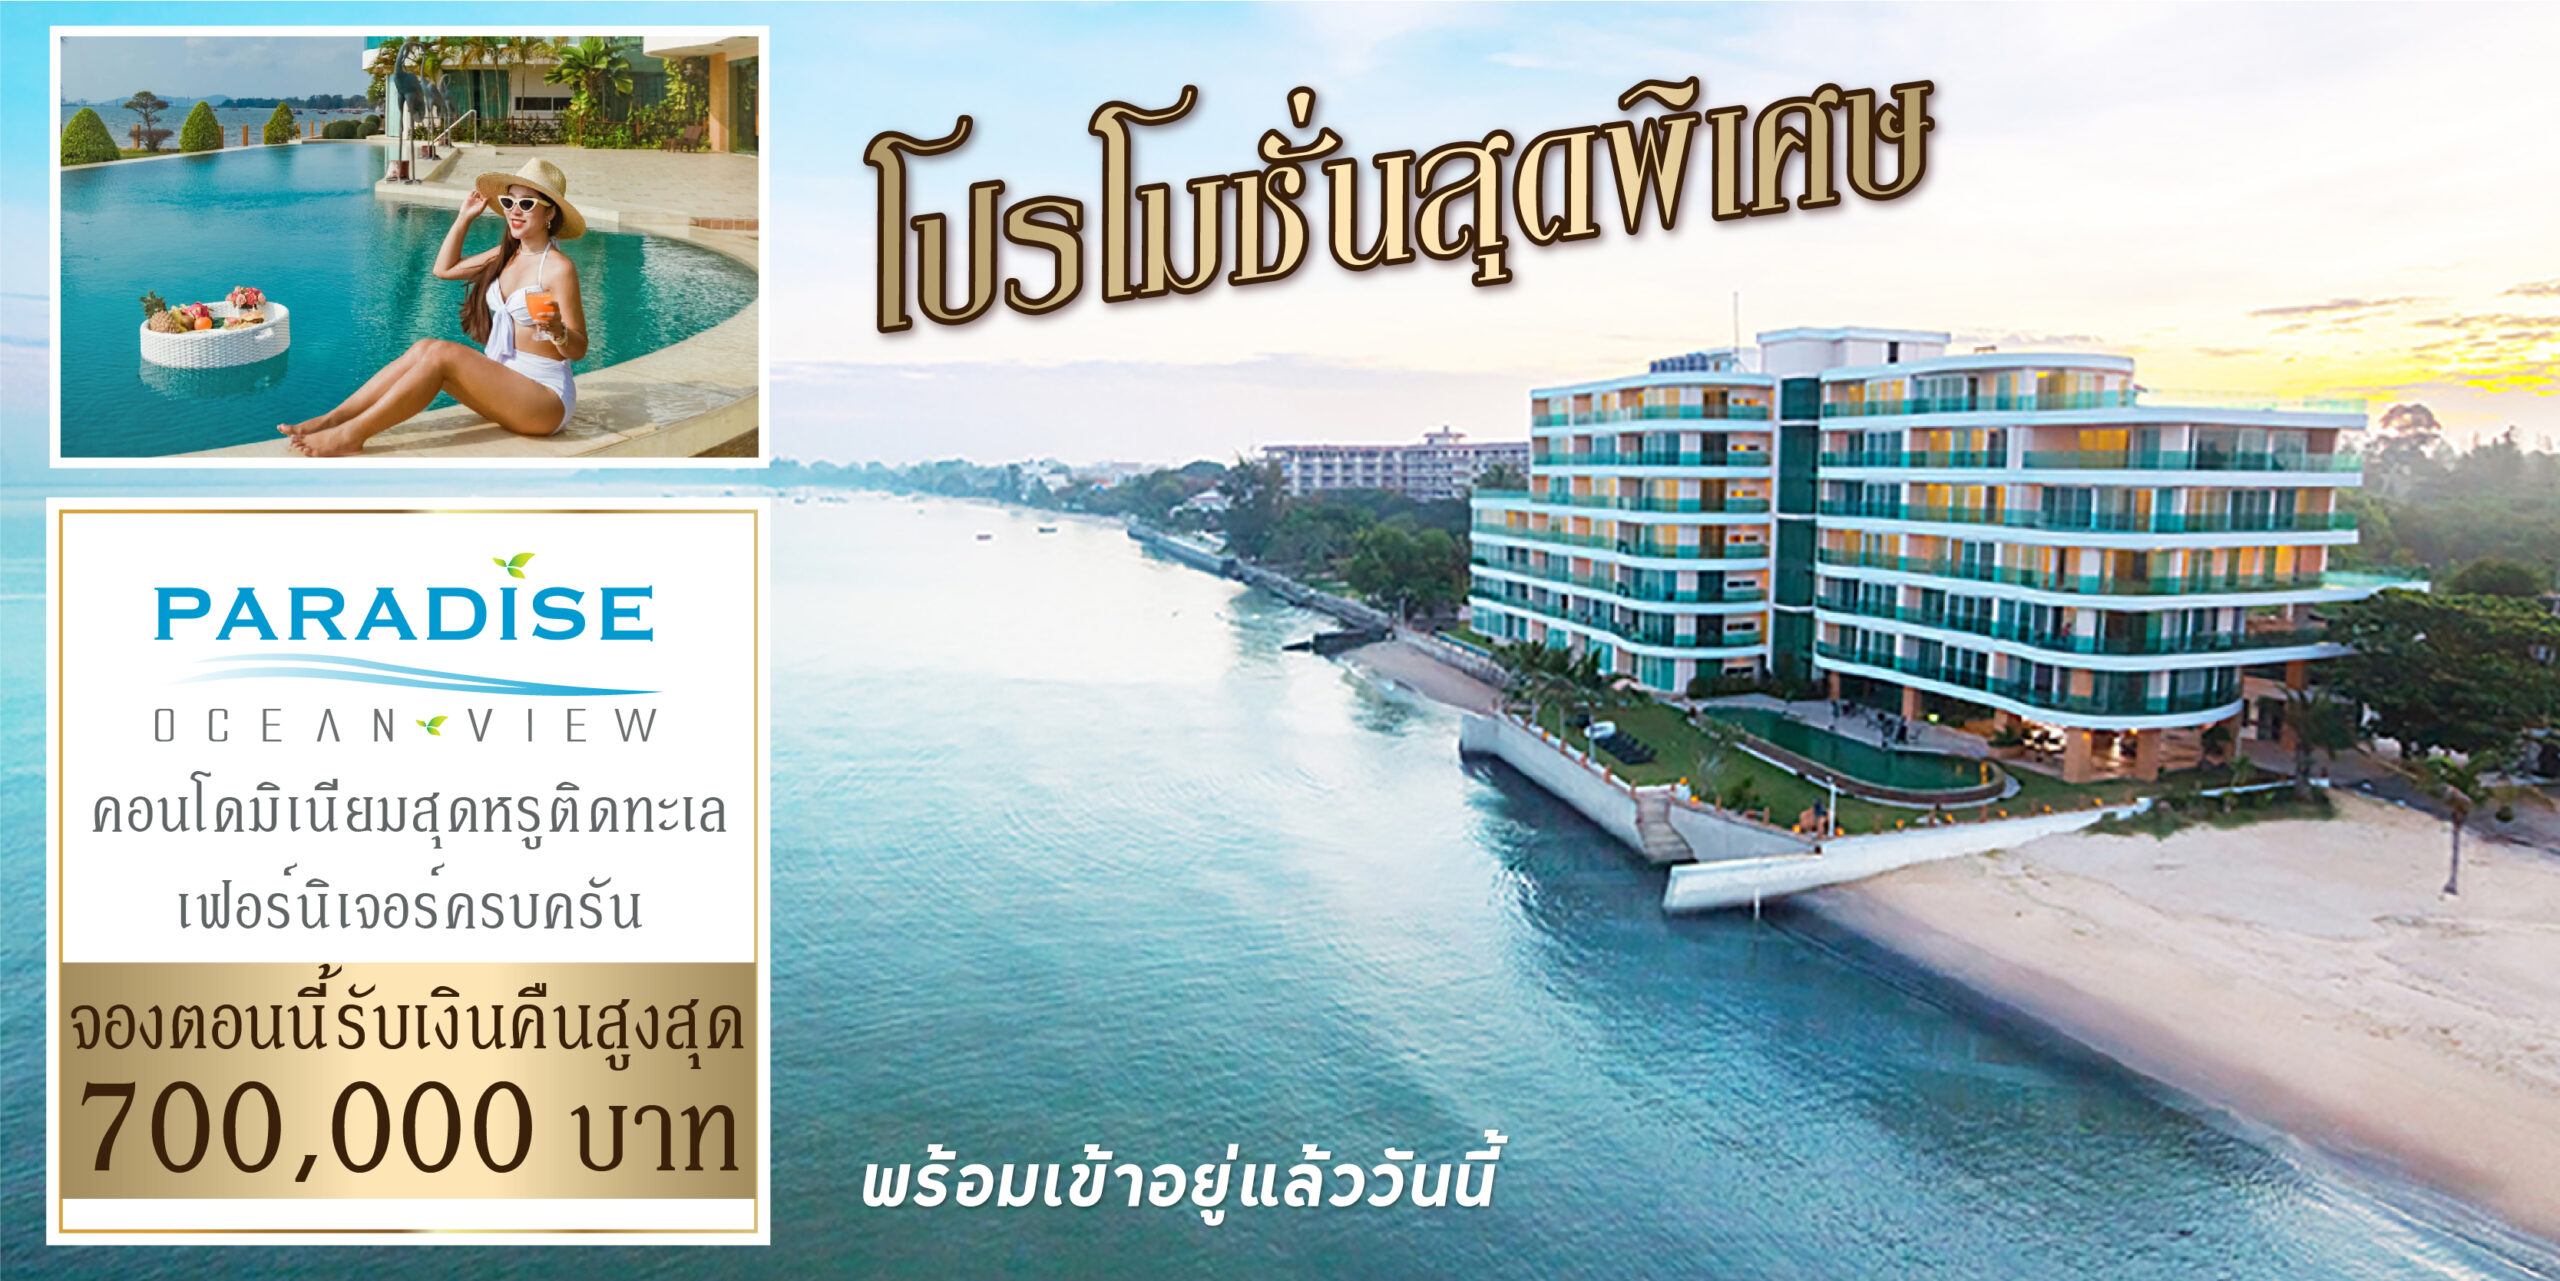 Landing Page Paradise Ocean View CashBack Promotion Cover Photo DESKTOP Version THAI